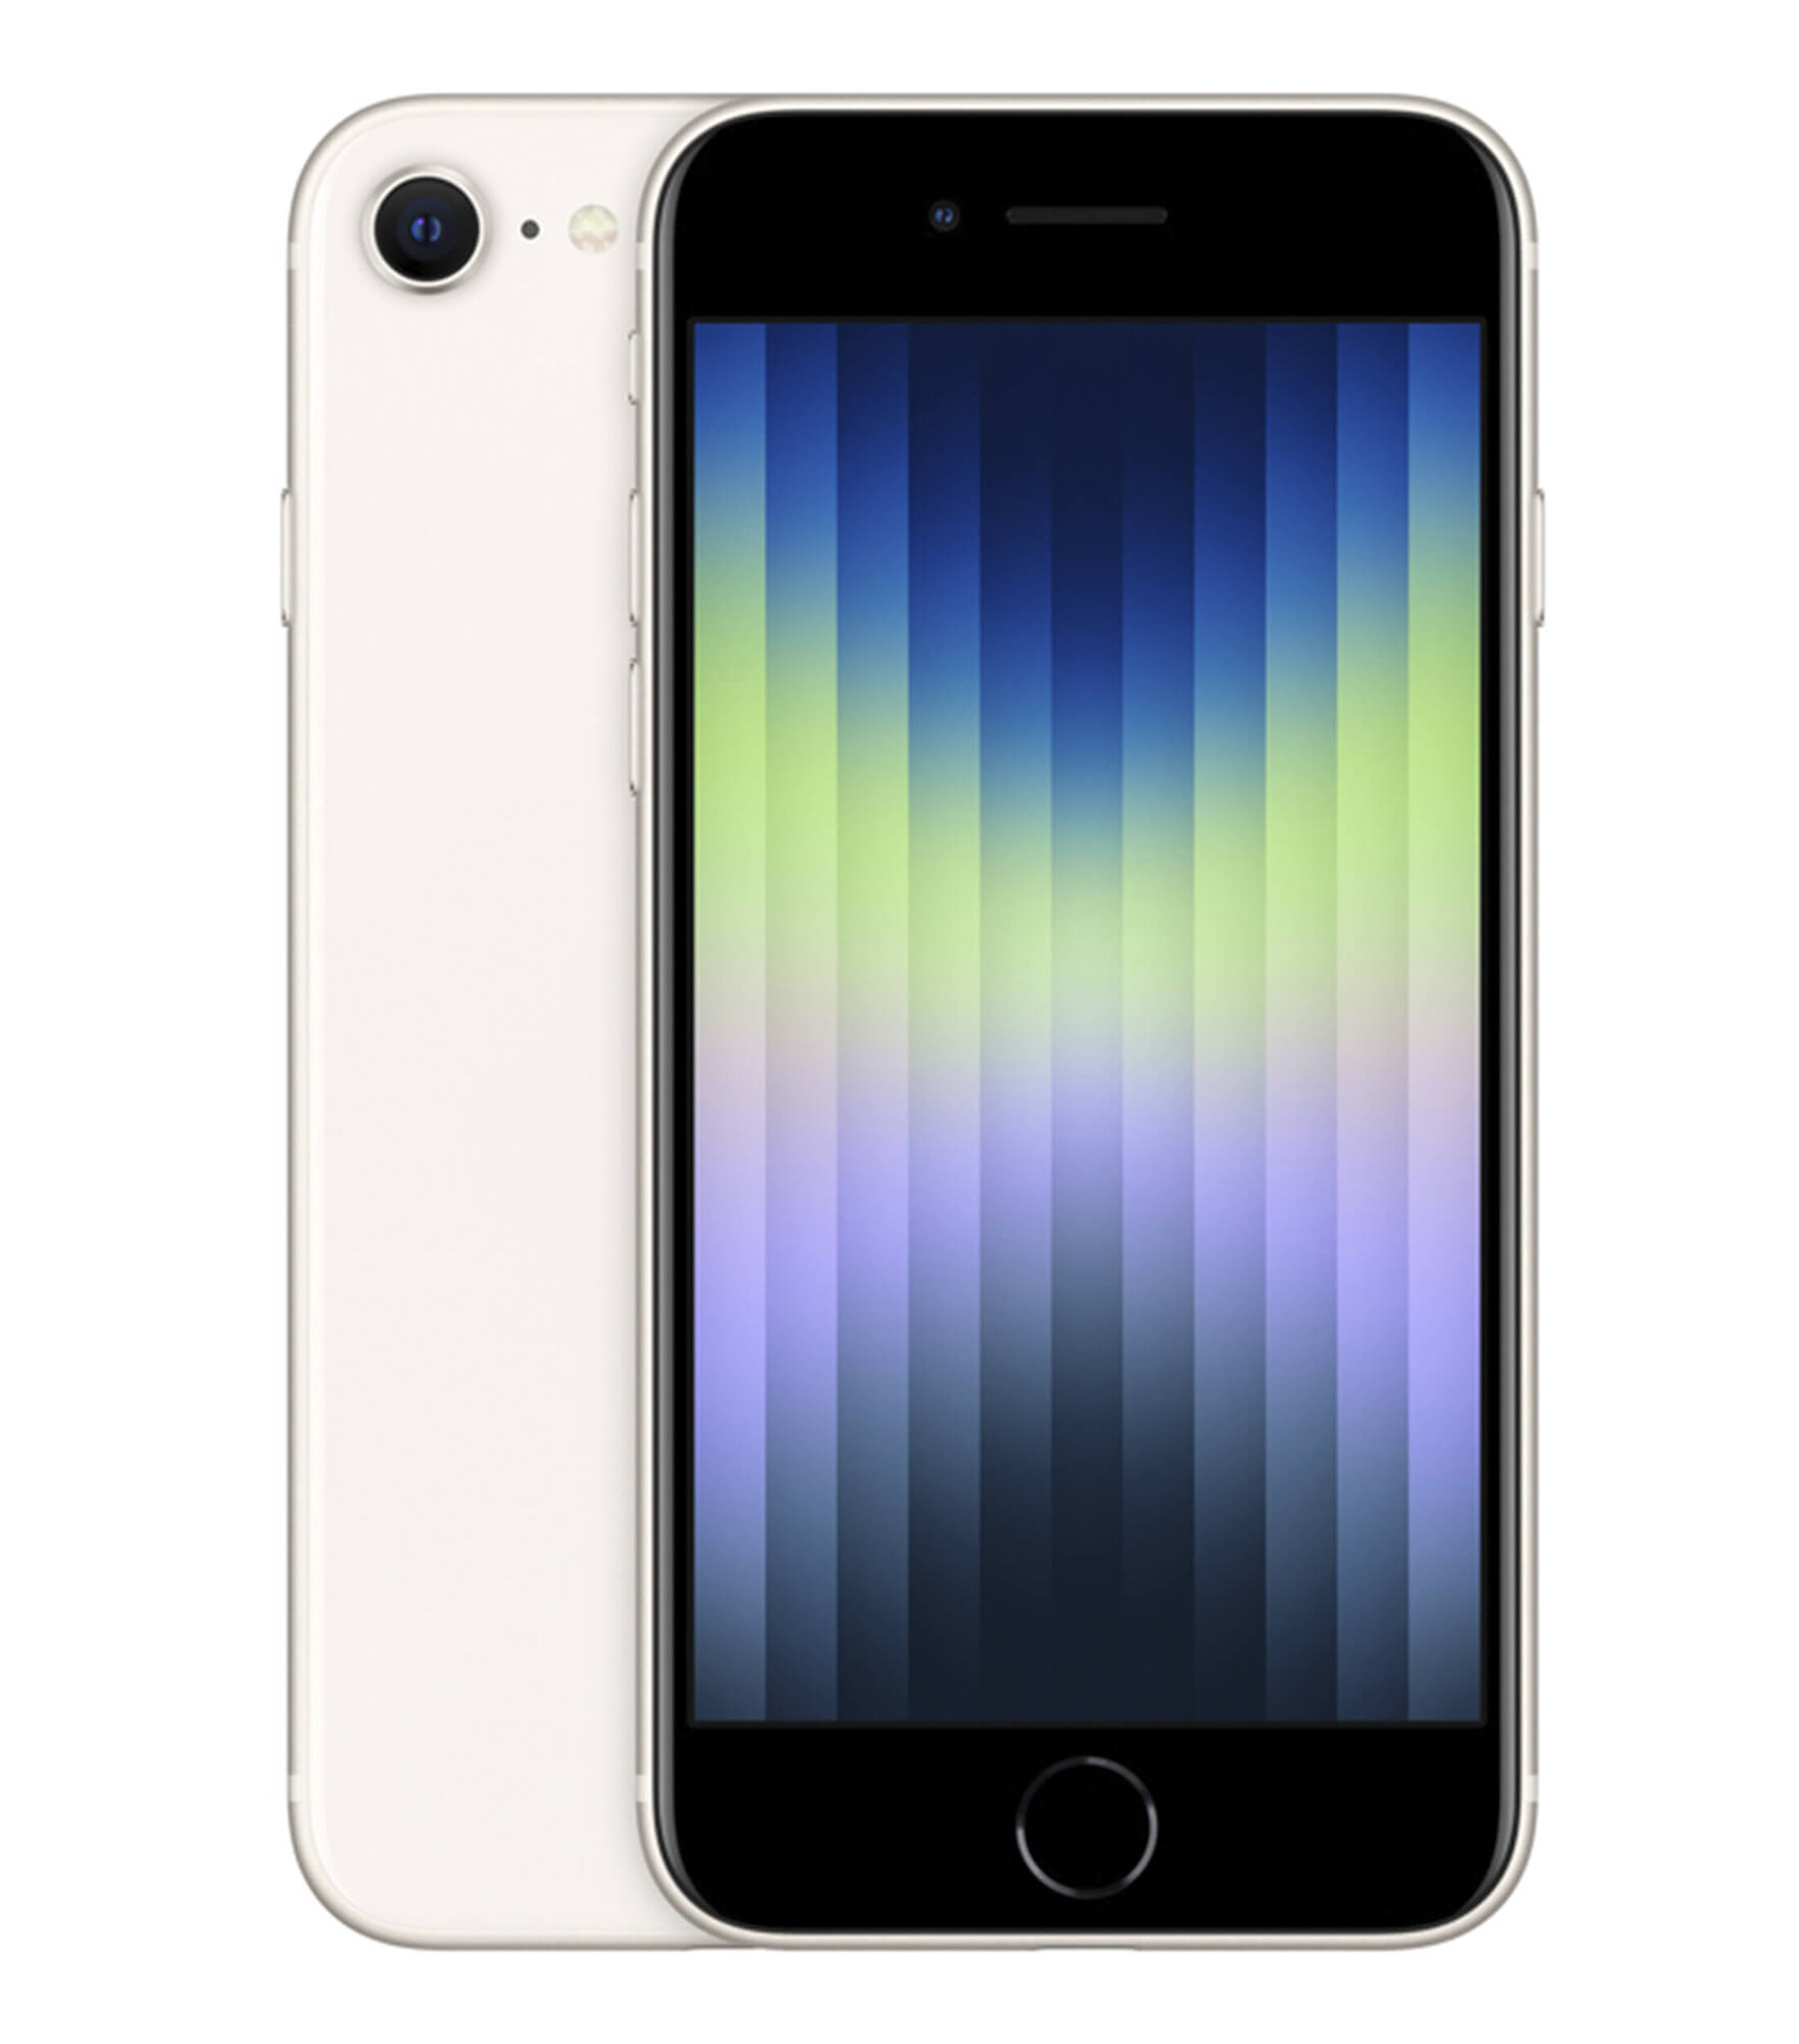 Apple Apple iPhone SE 128 GB Blanco Estelar Telcel El Palacio de Hierro